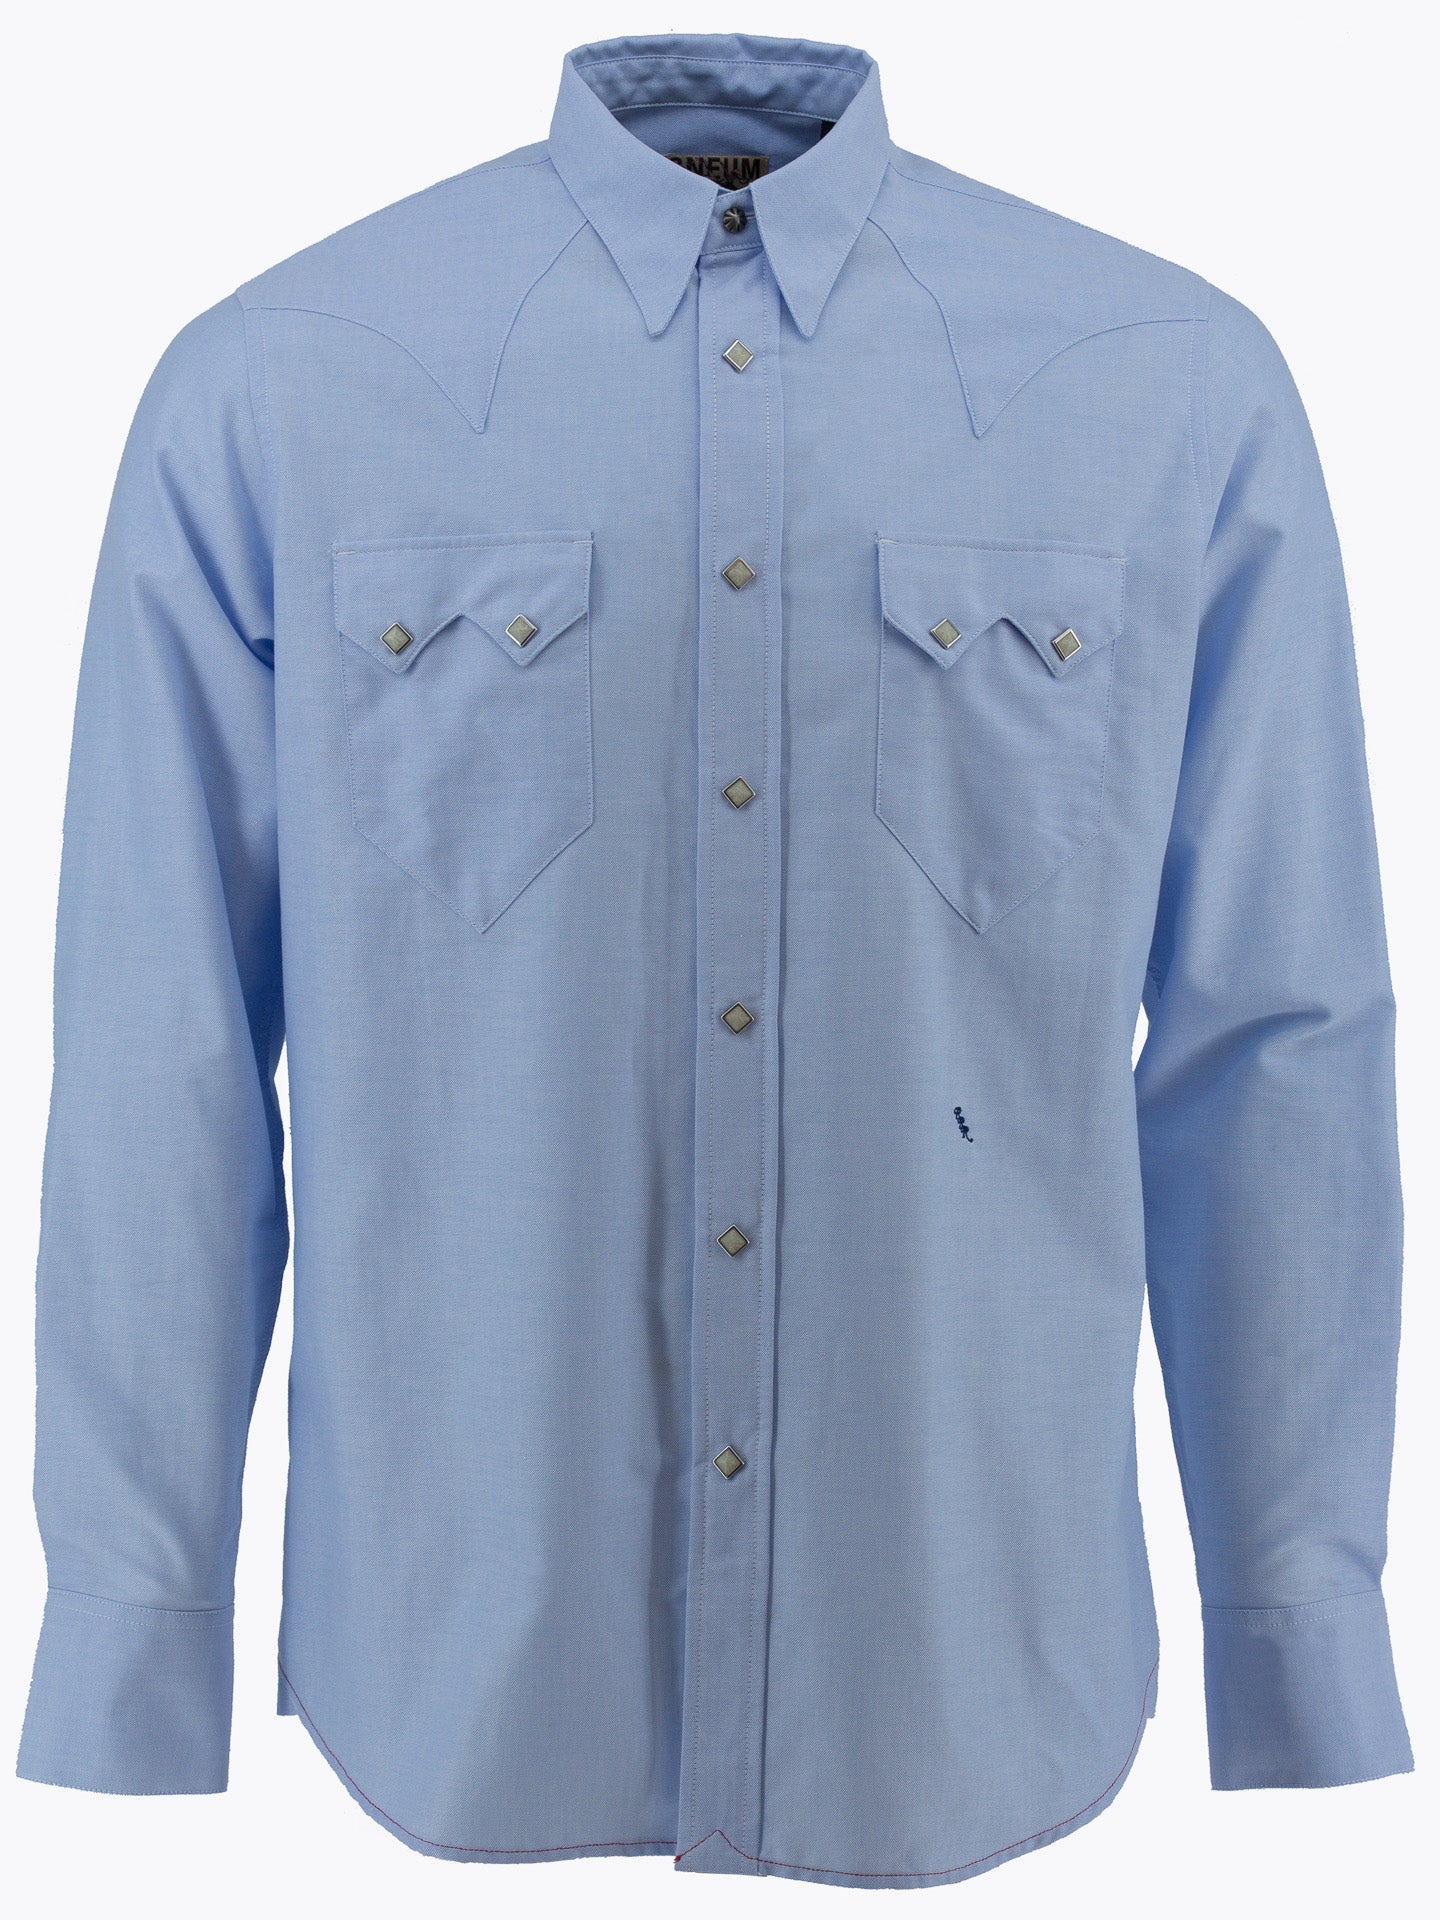 Sawtooth Western Shirt, Light Blue-Skjorter-Sneum-Motorious Copenhagen